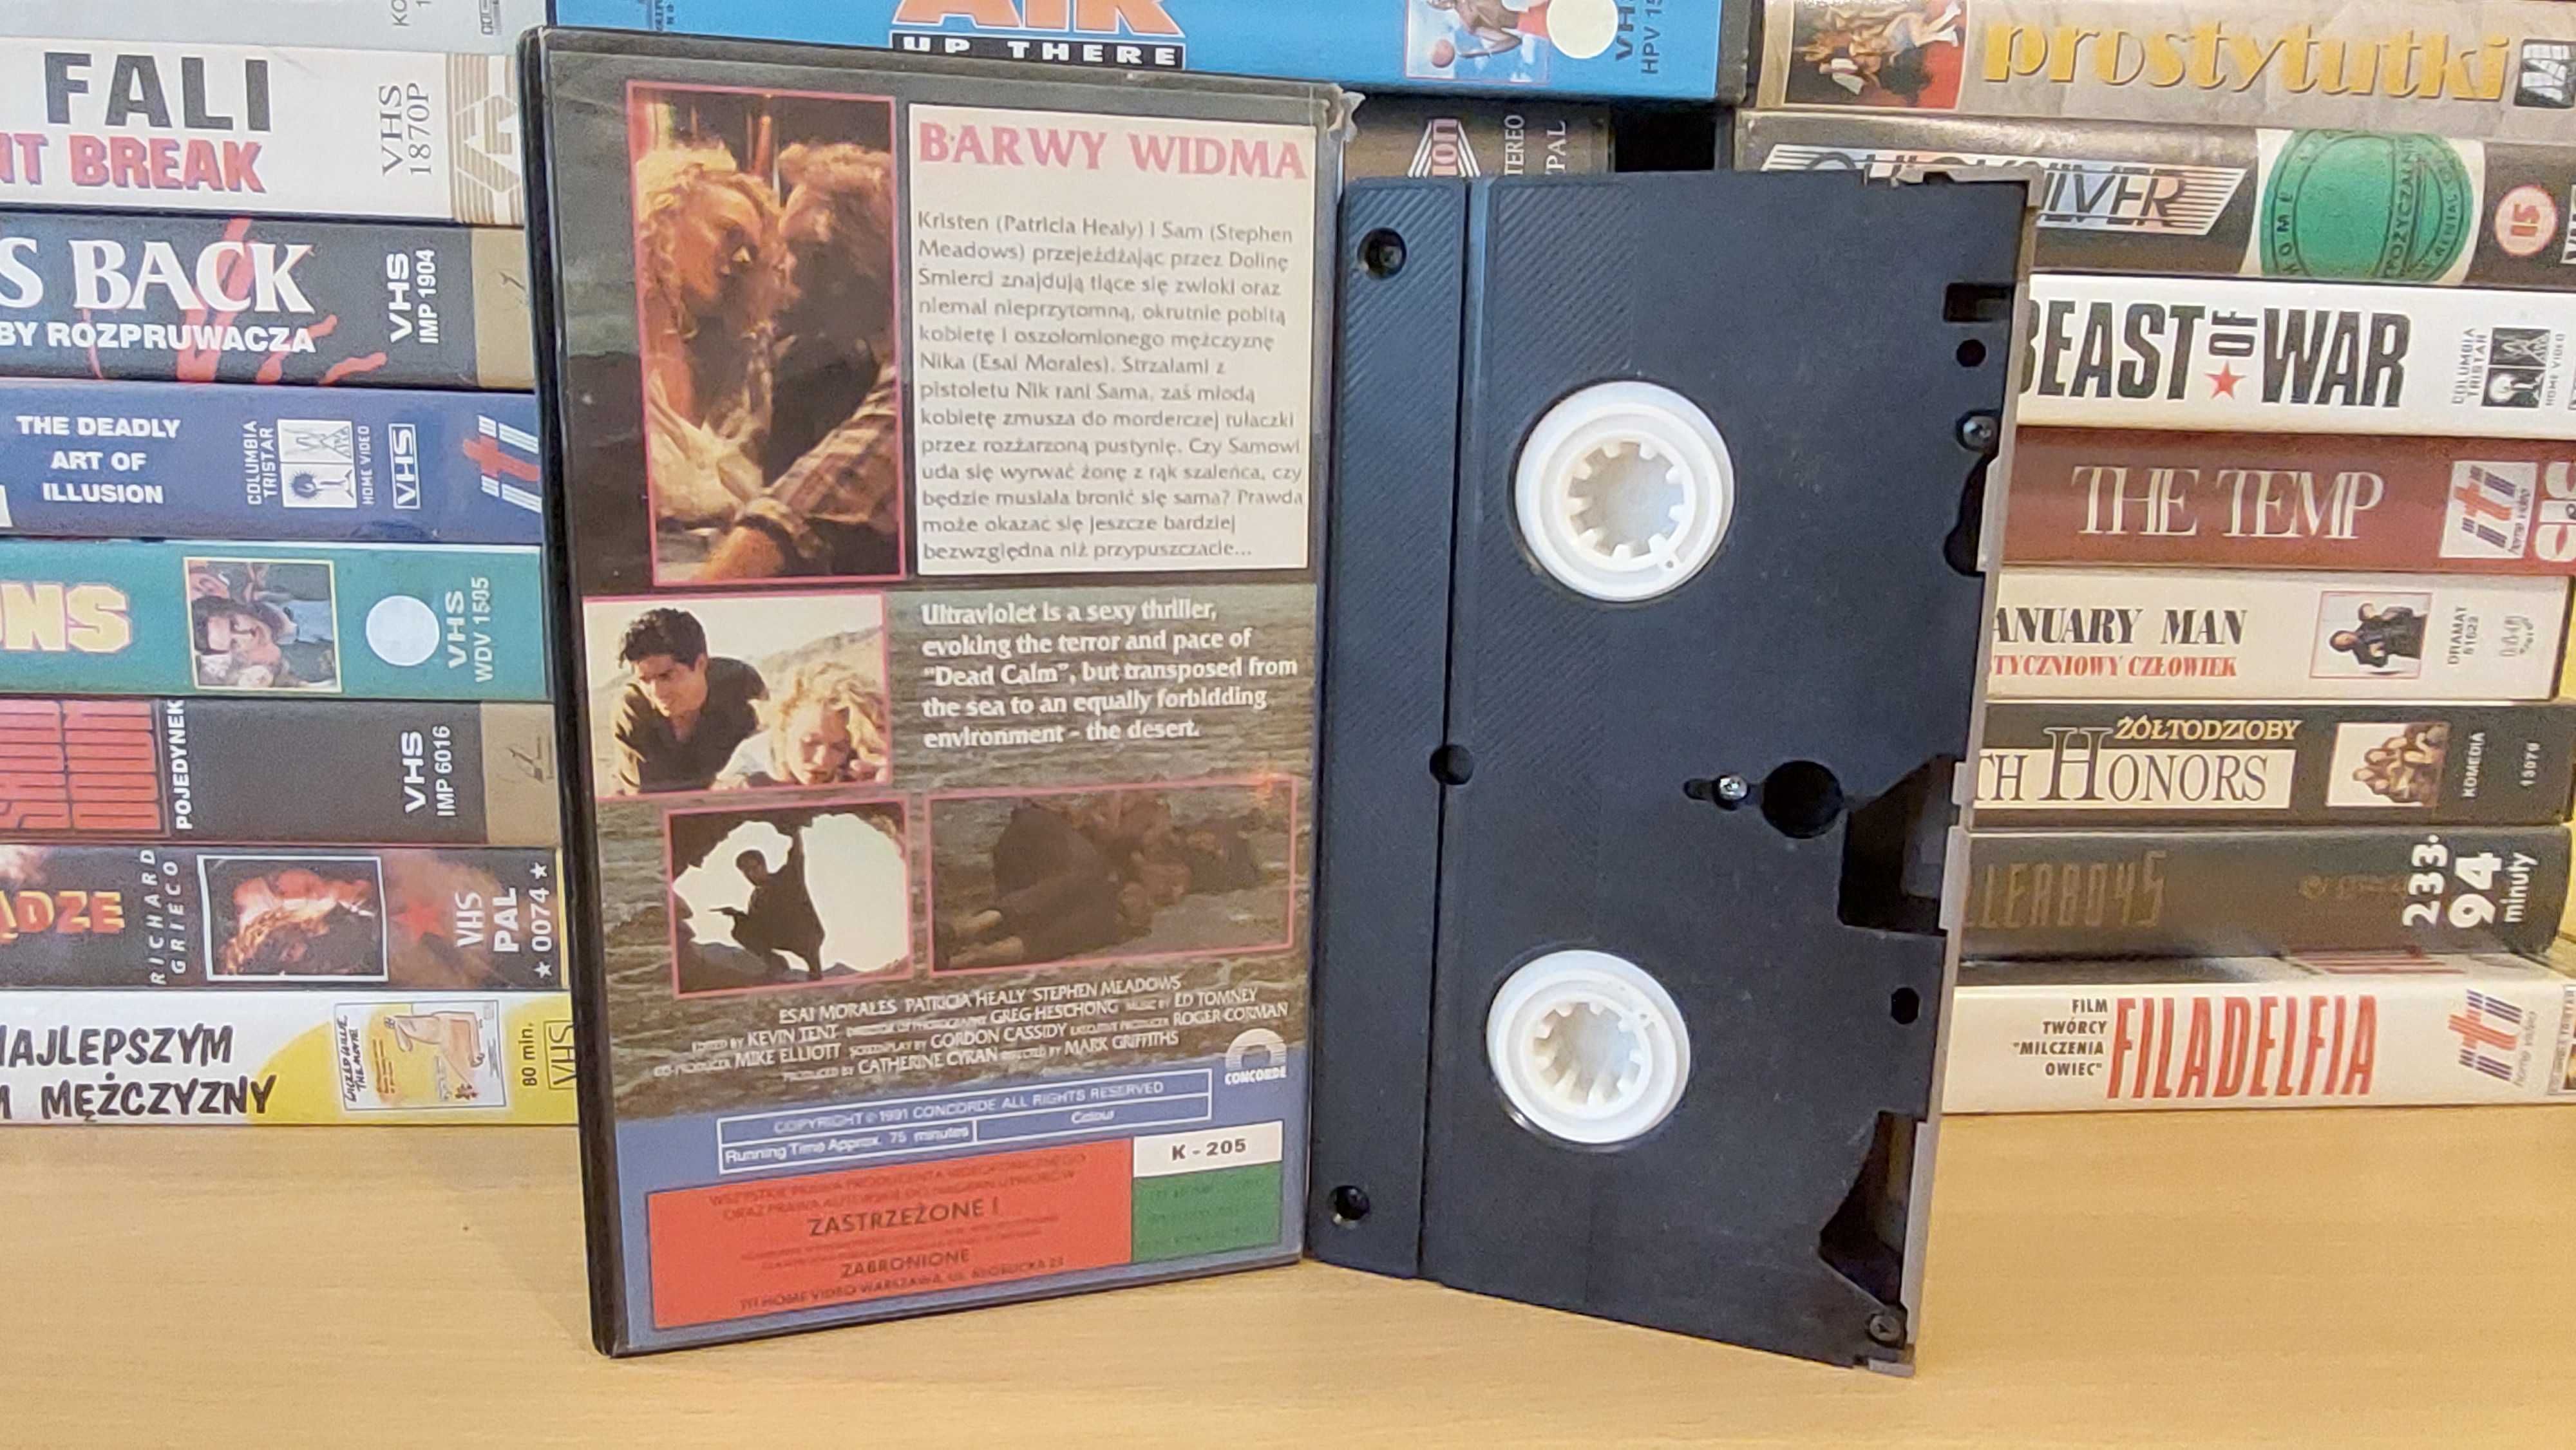 Barwy Widma - (Ultraviolet) - VHS